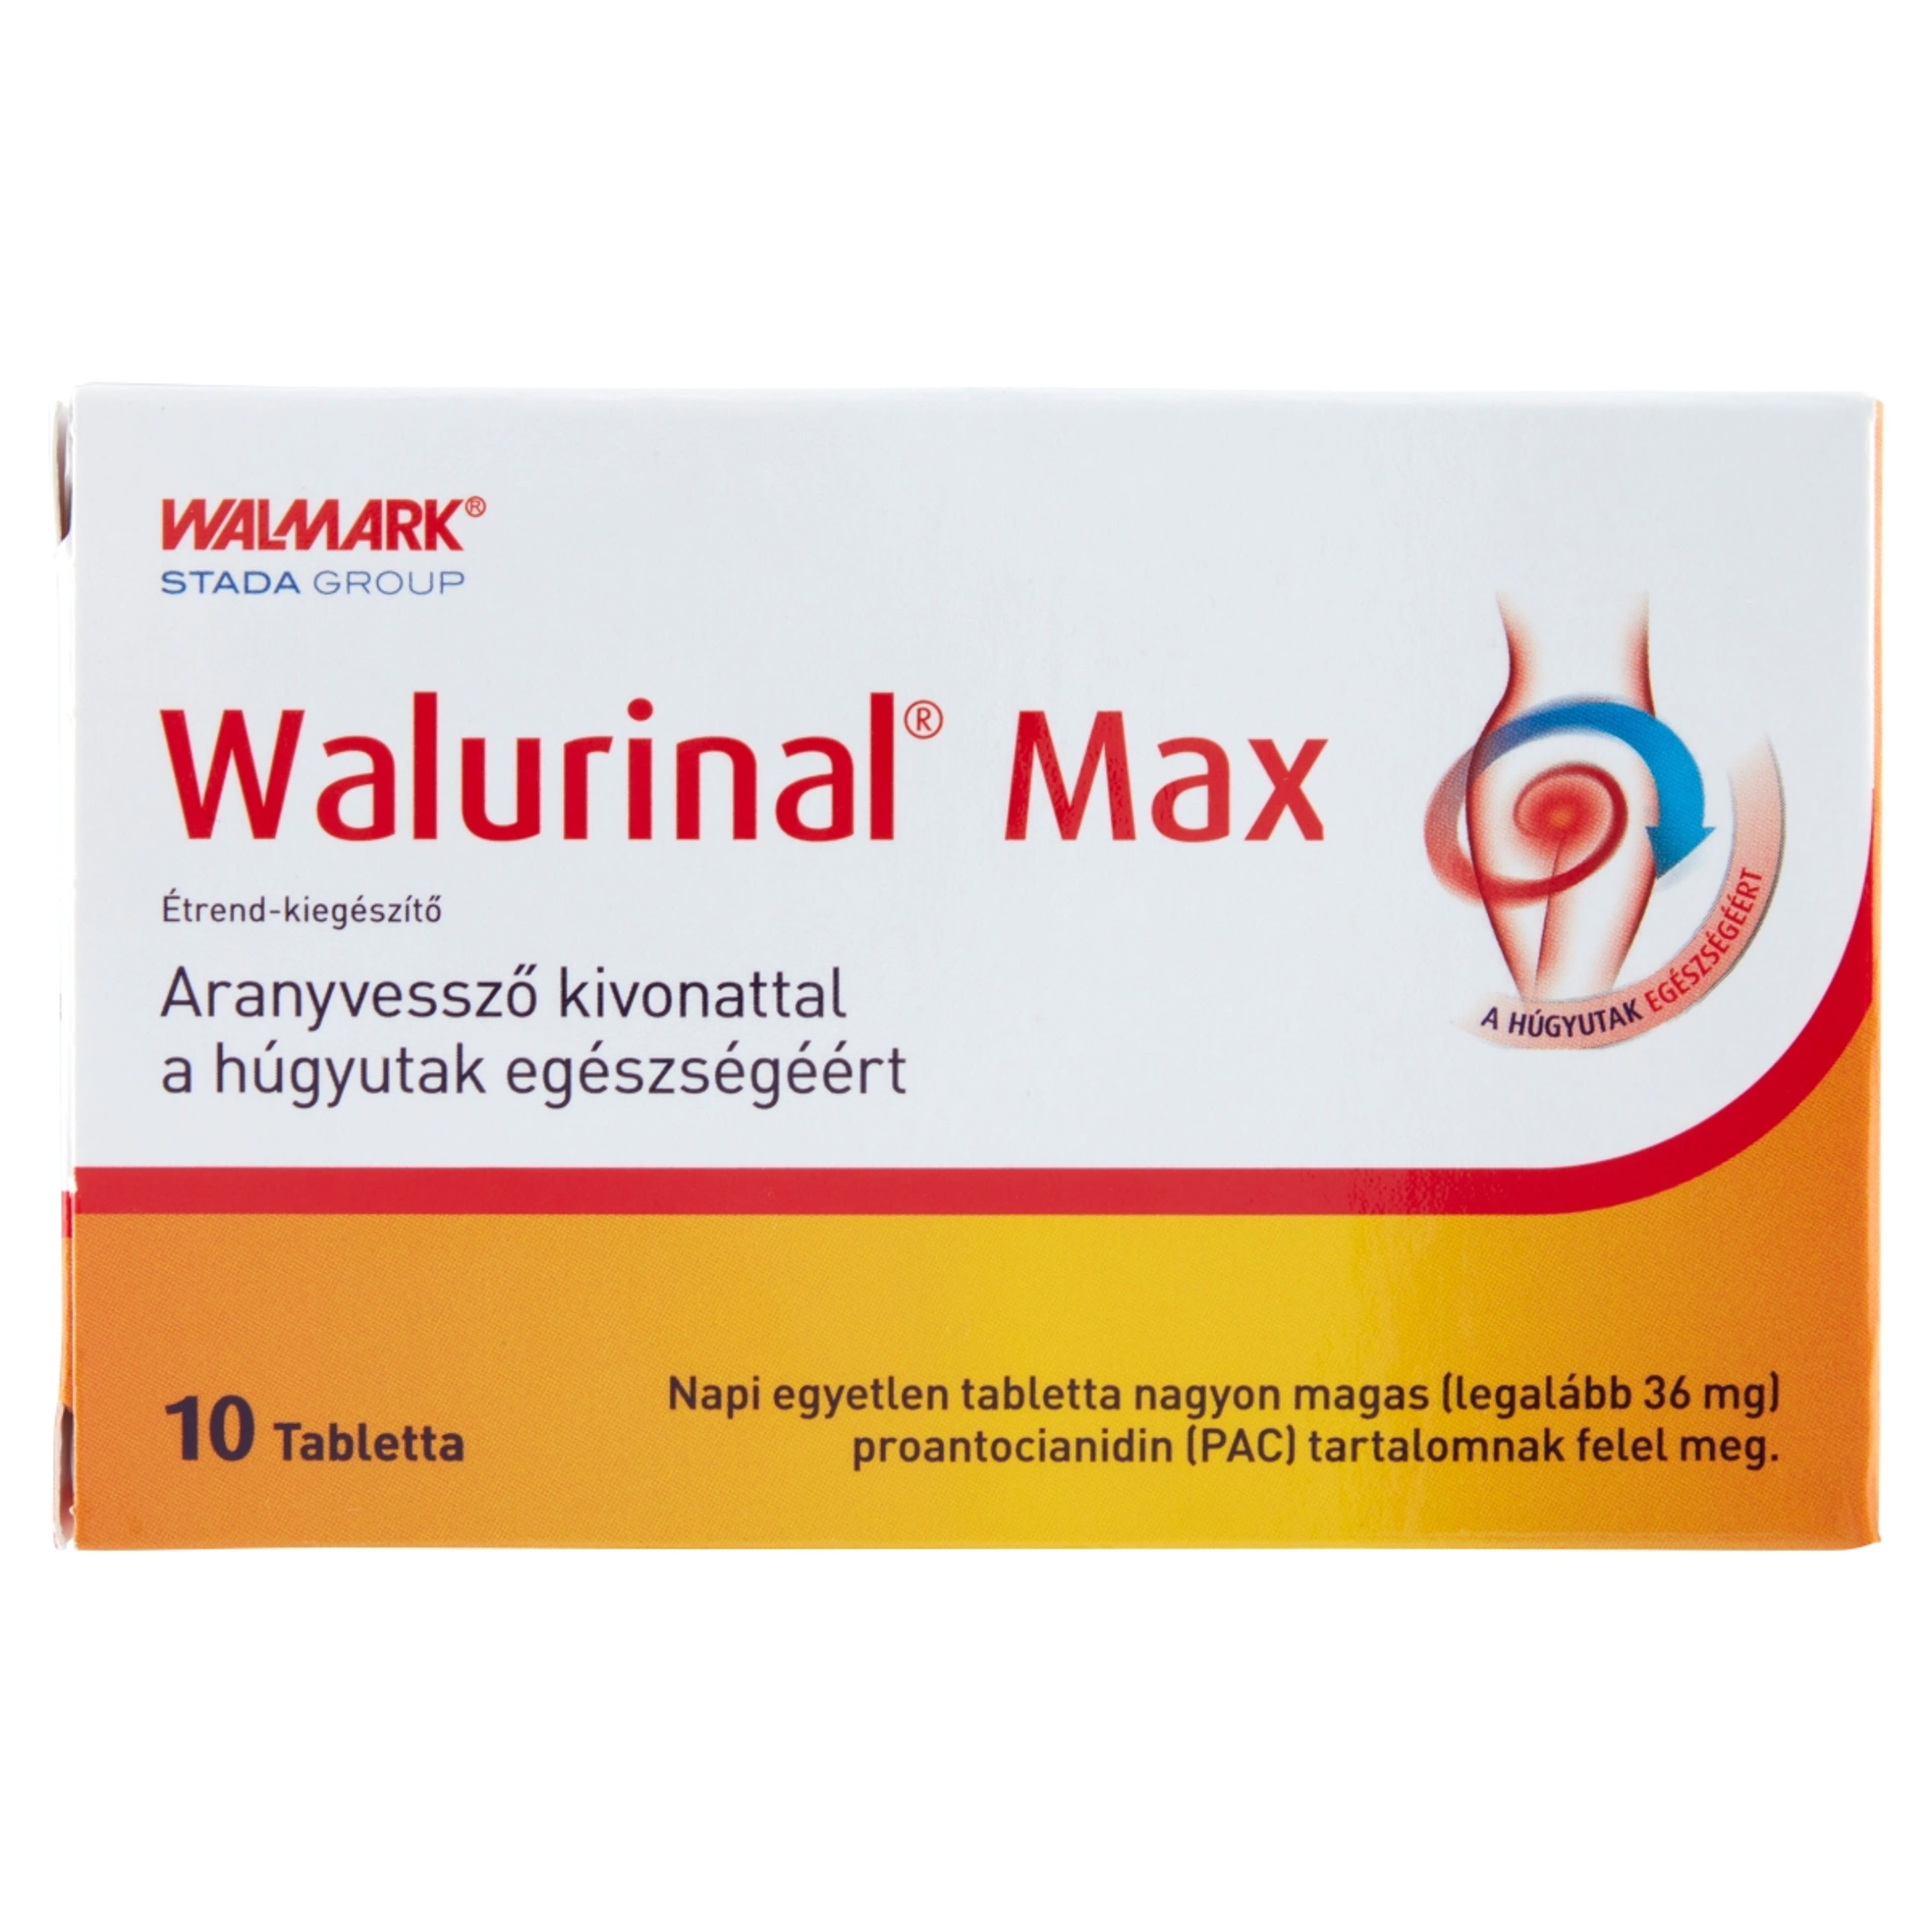 Walurinal Max tabletta aranyvessző kivonattal - 10 db